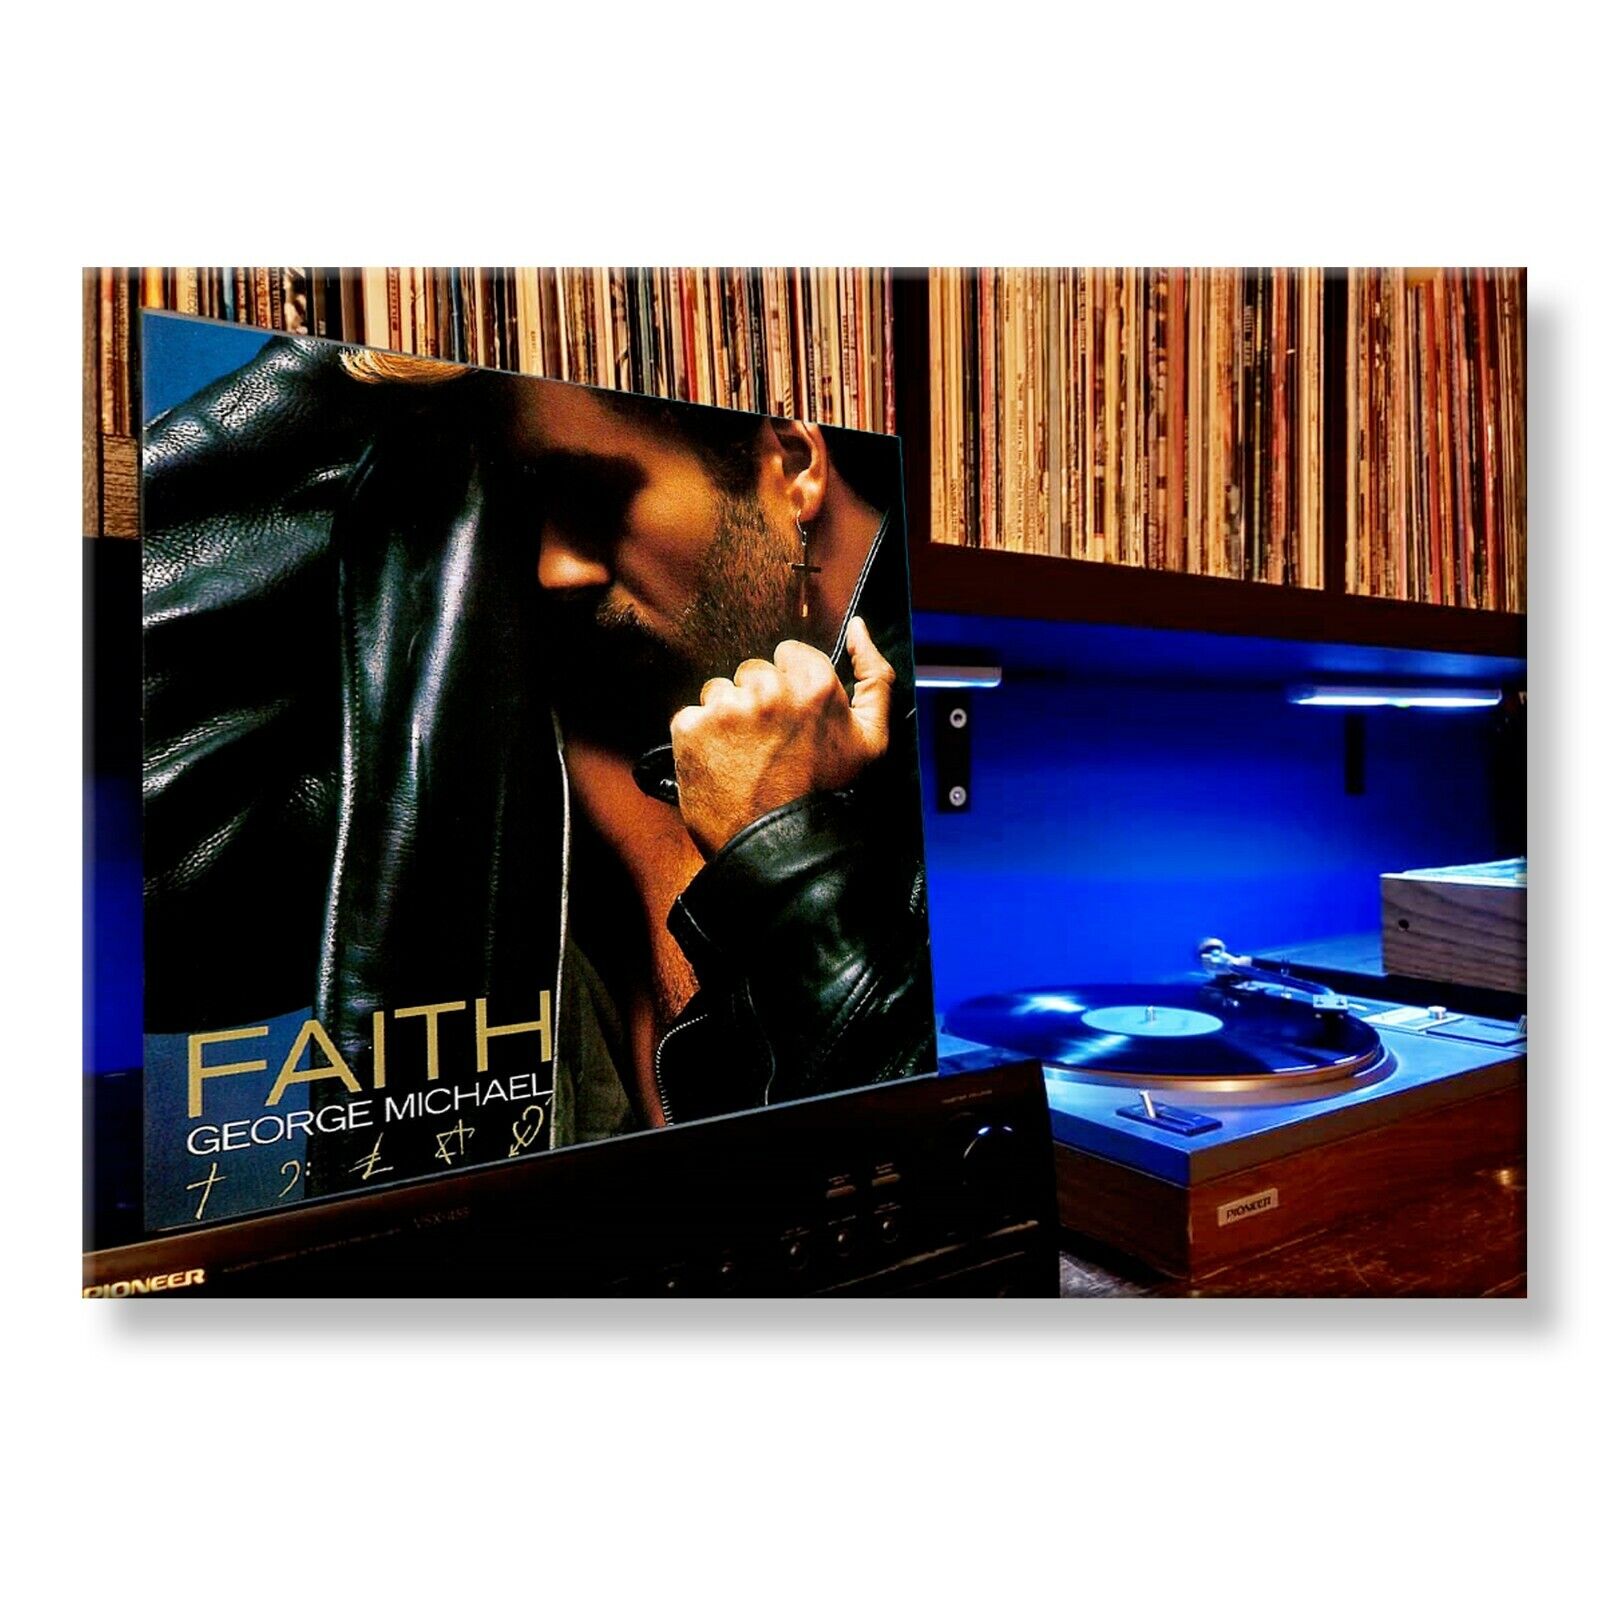 GEORGE MICHAEL Faith Classic Album 3.5 inches x 2.5 inches FRIDGE MAGNET